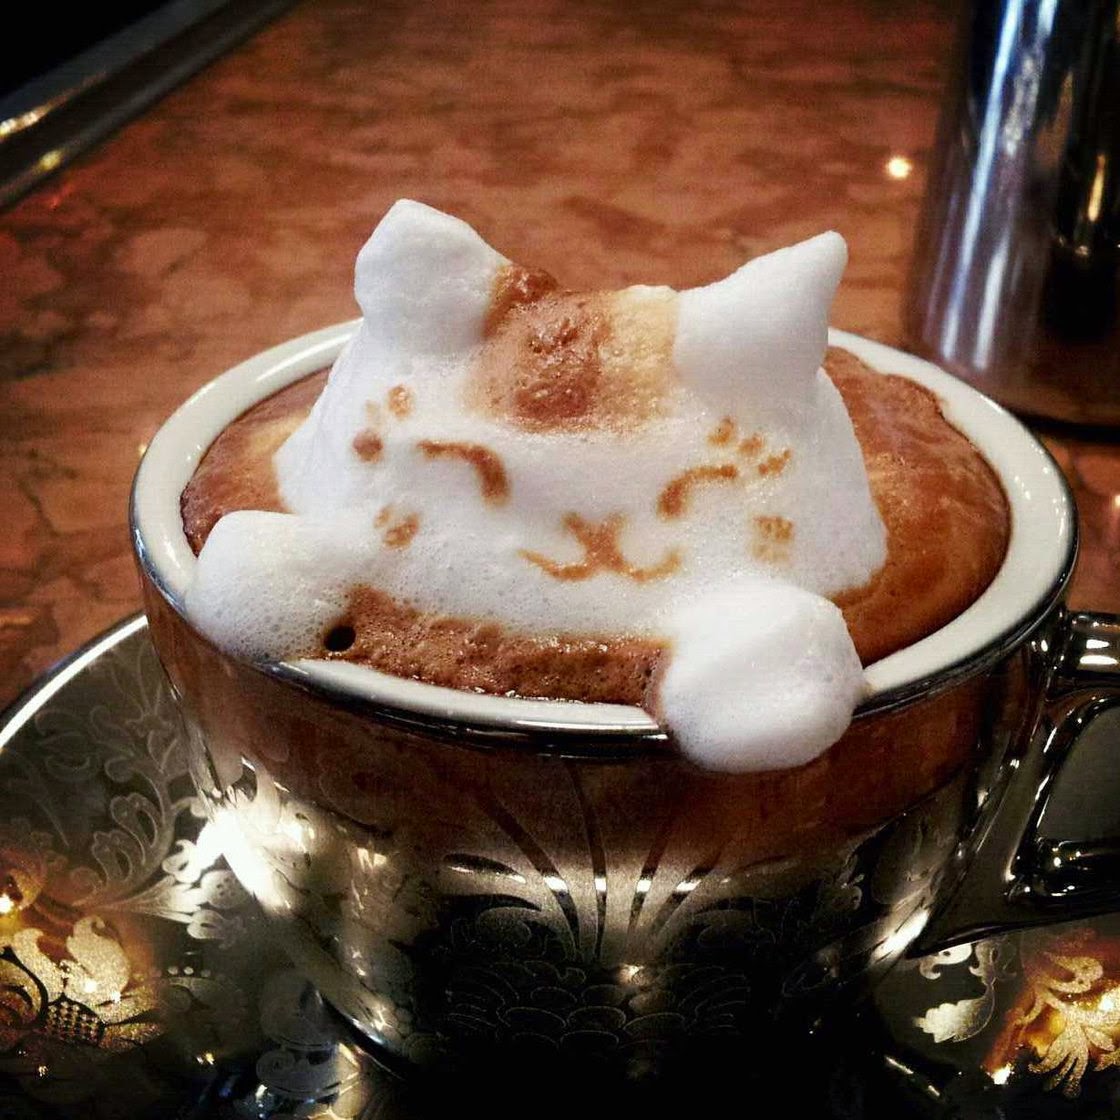 http://www.npr.org/blogs/thesalt/2013/04/24/178841995/masterpiece-in-a-mug-japanese-latte-art-will-perk-you-up